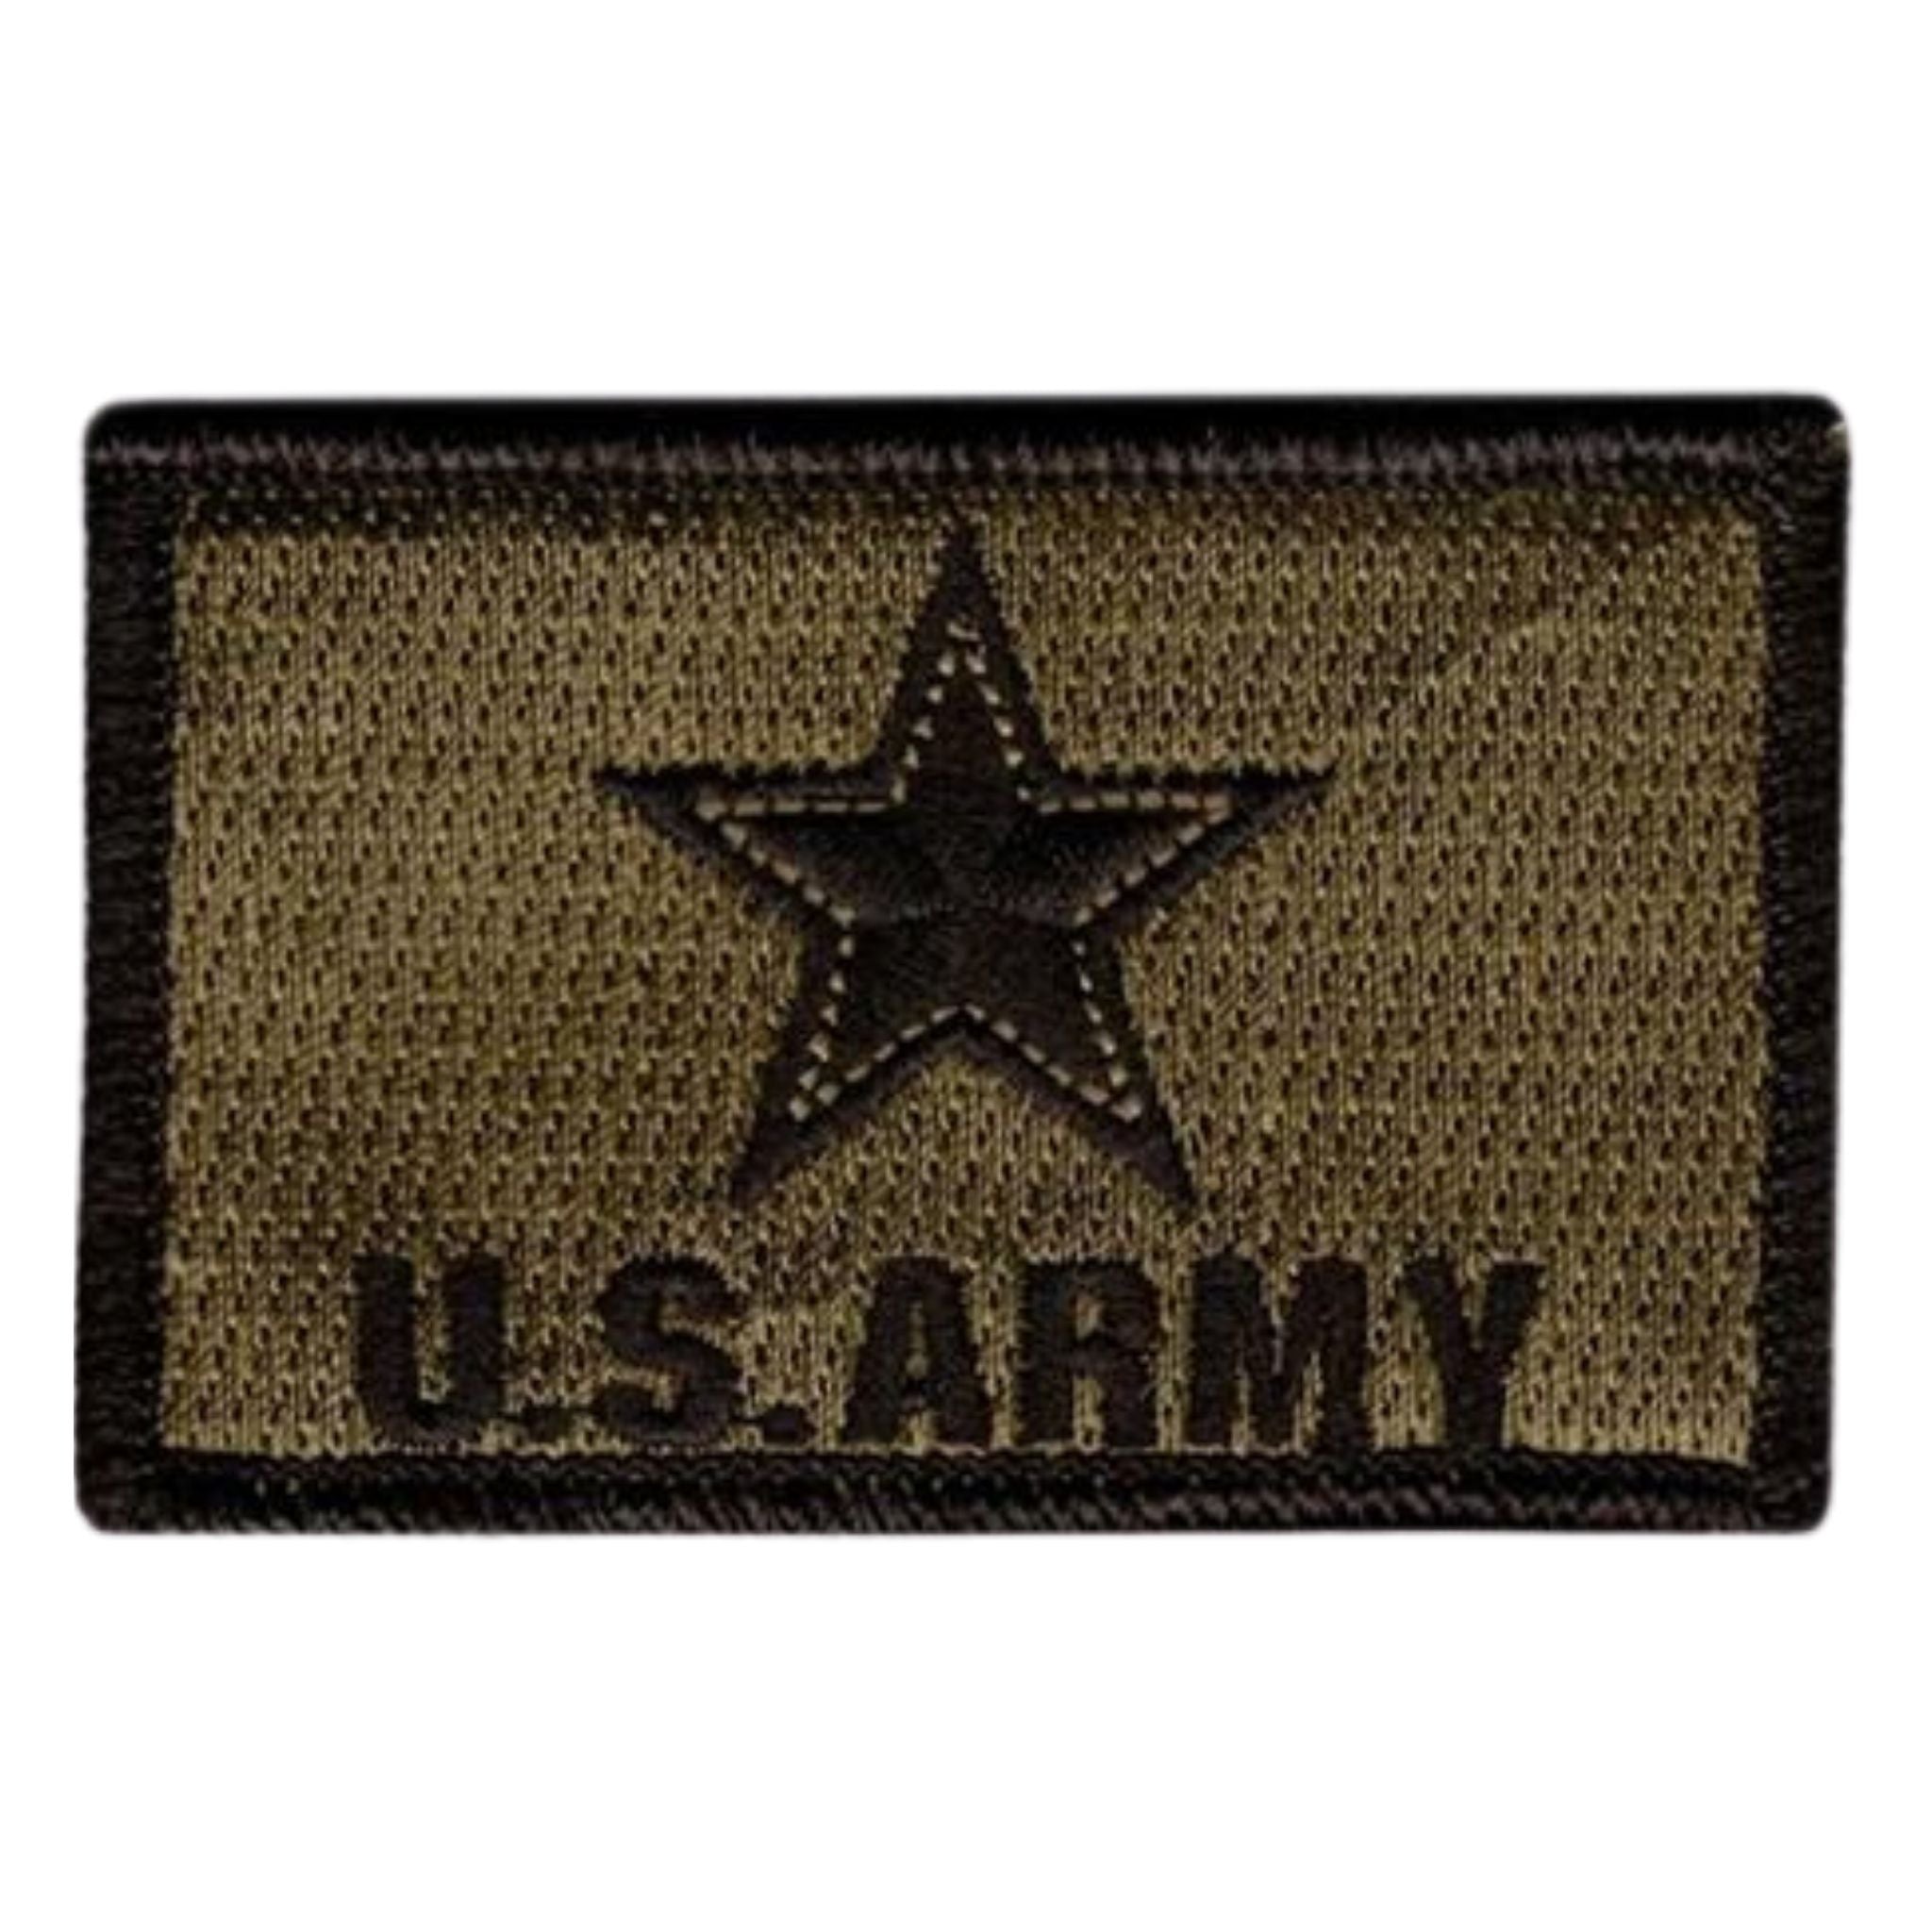 U.S. ARMY Patch